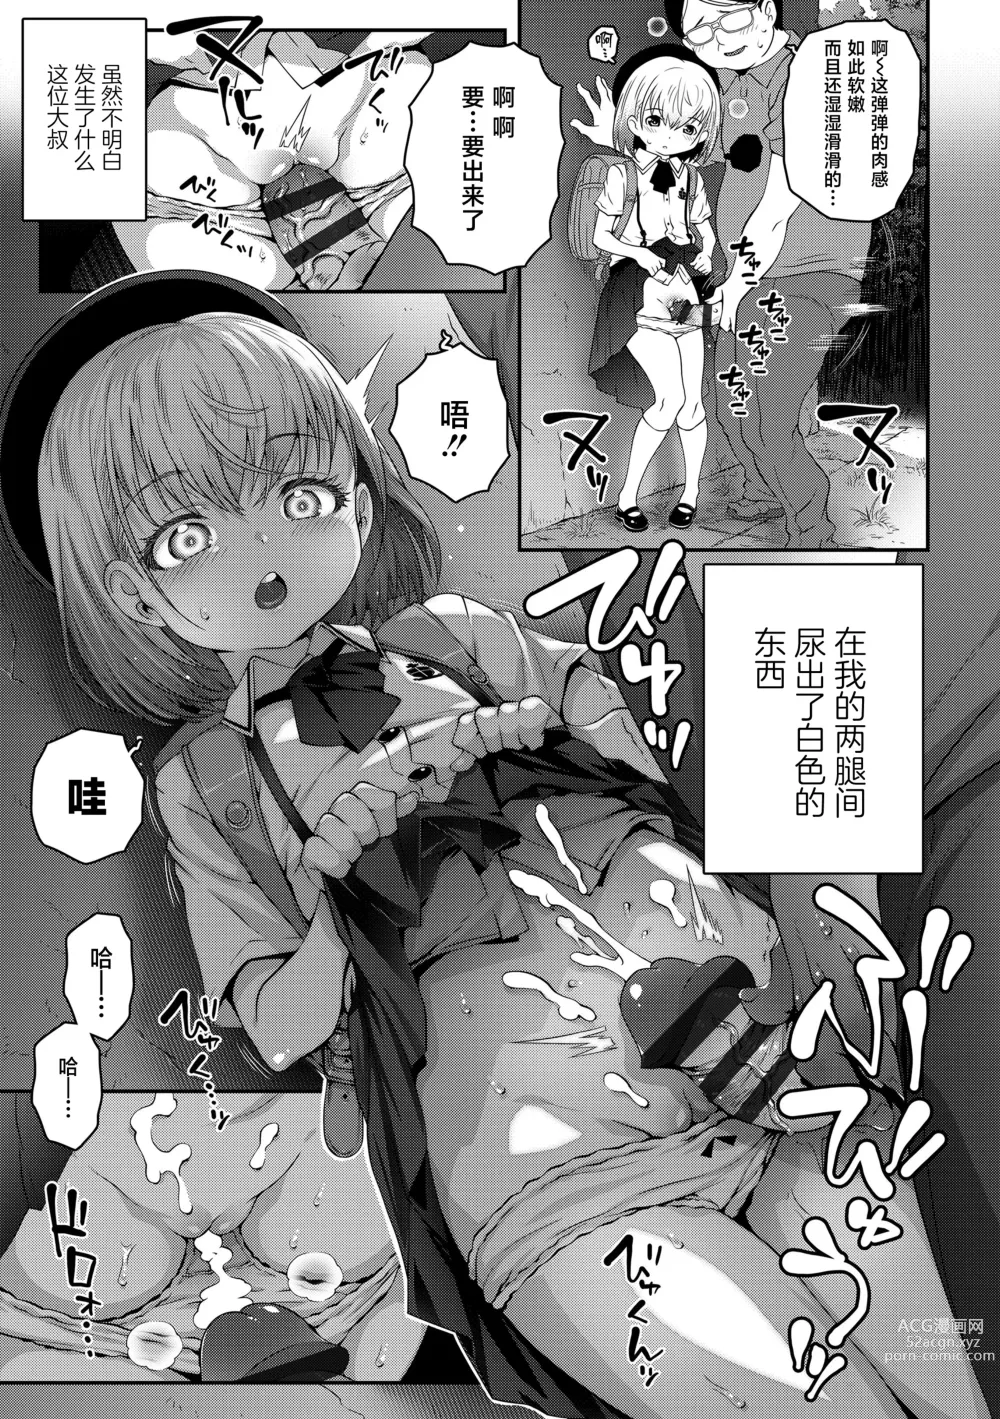 Page 4 of manga Gomen ne Oji-san